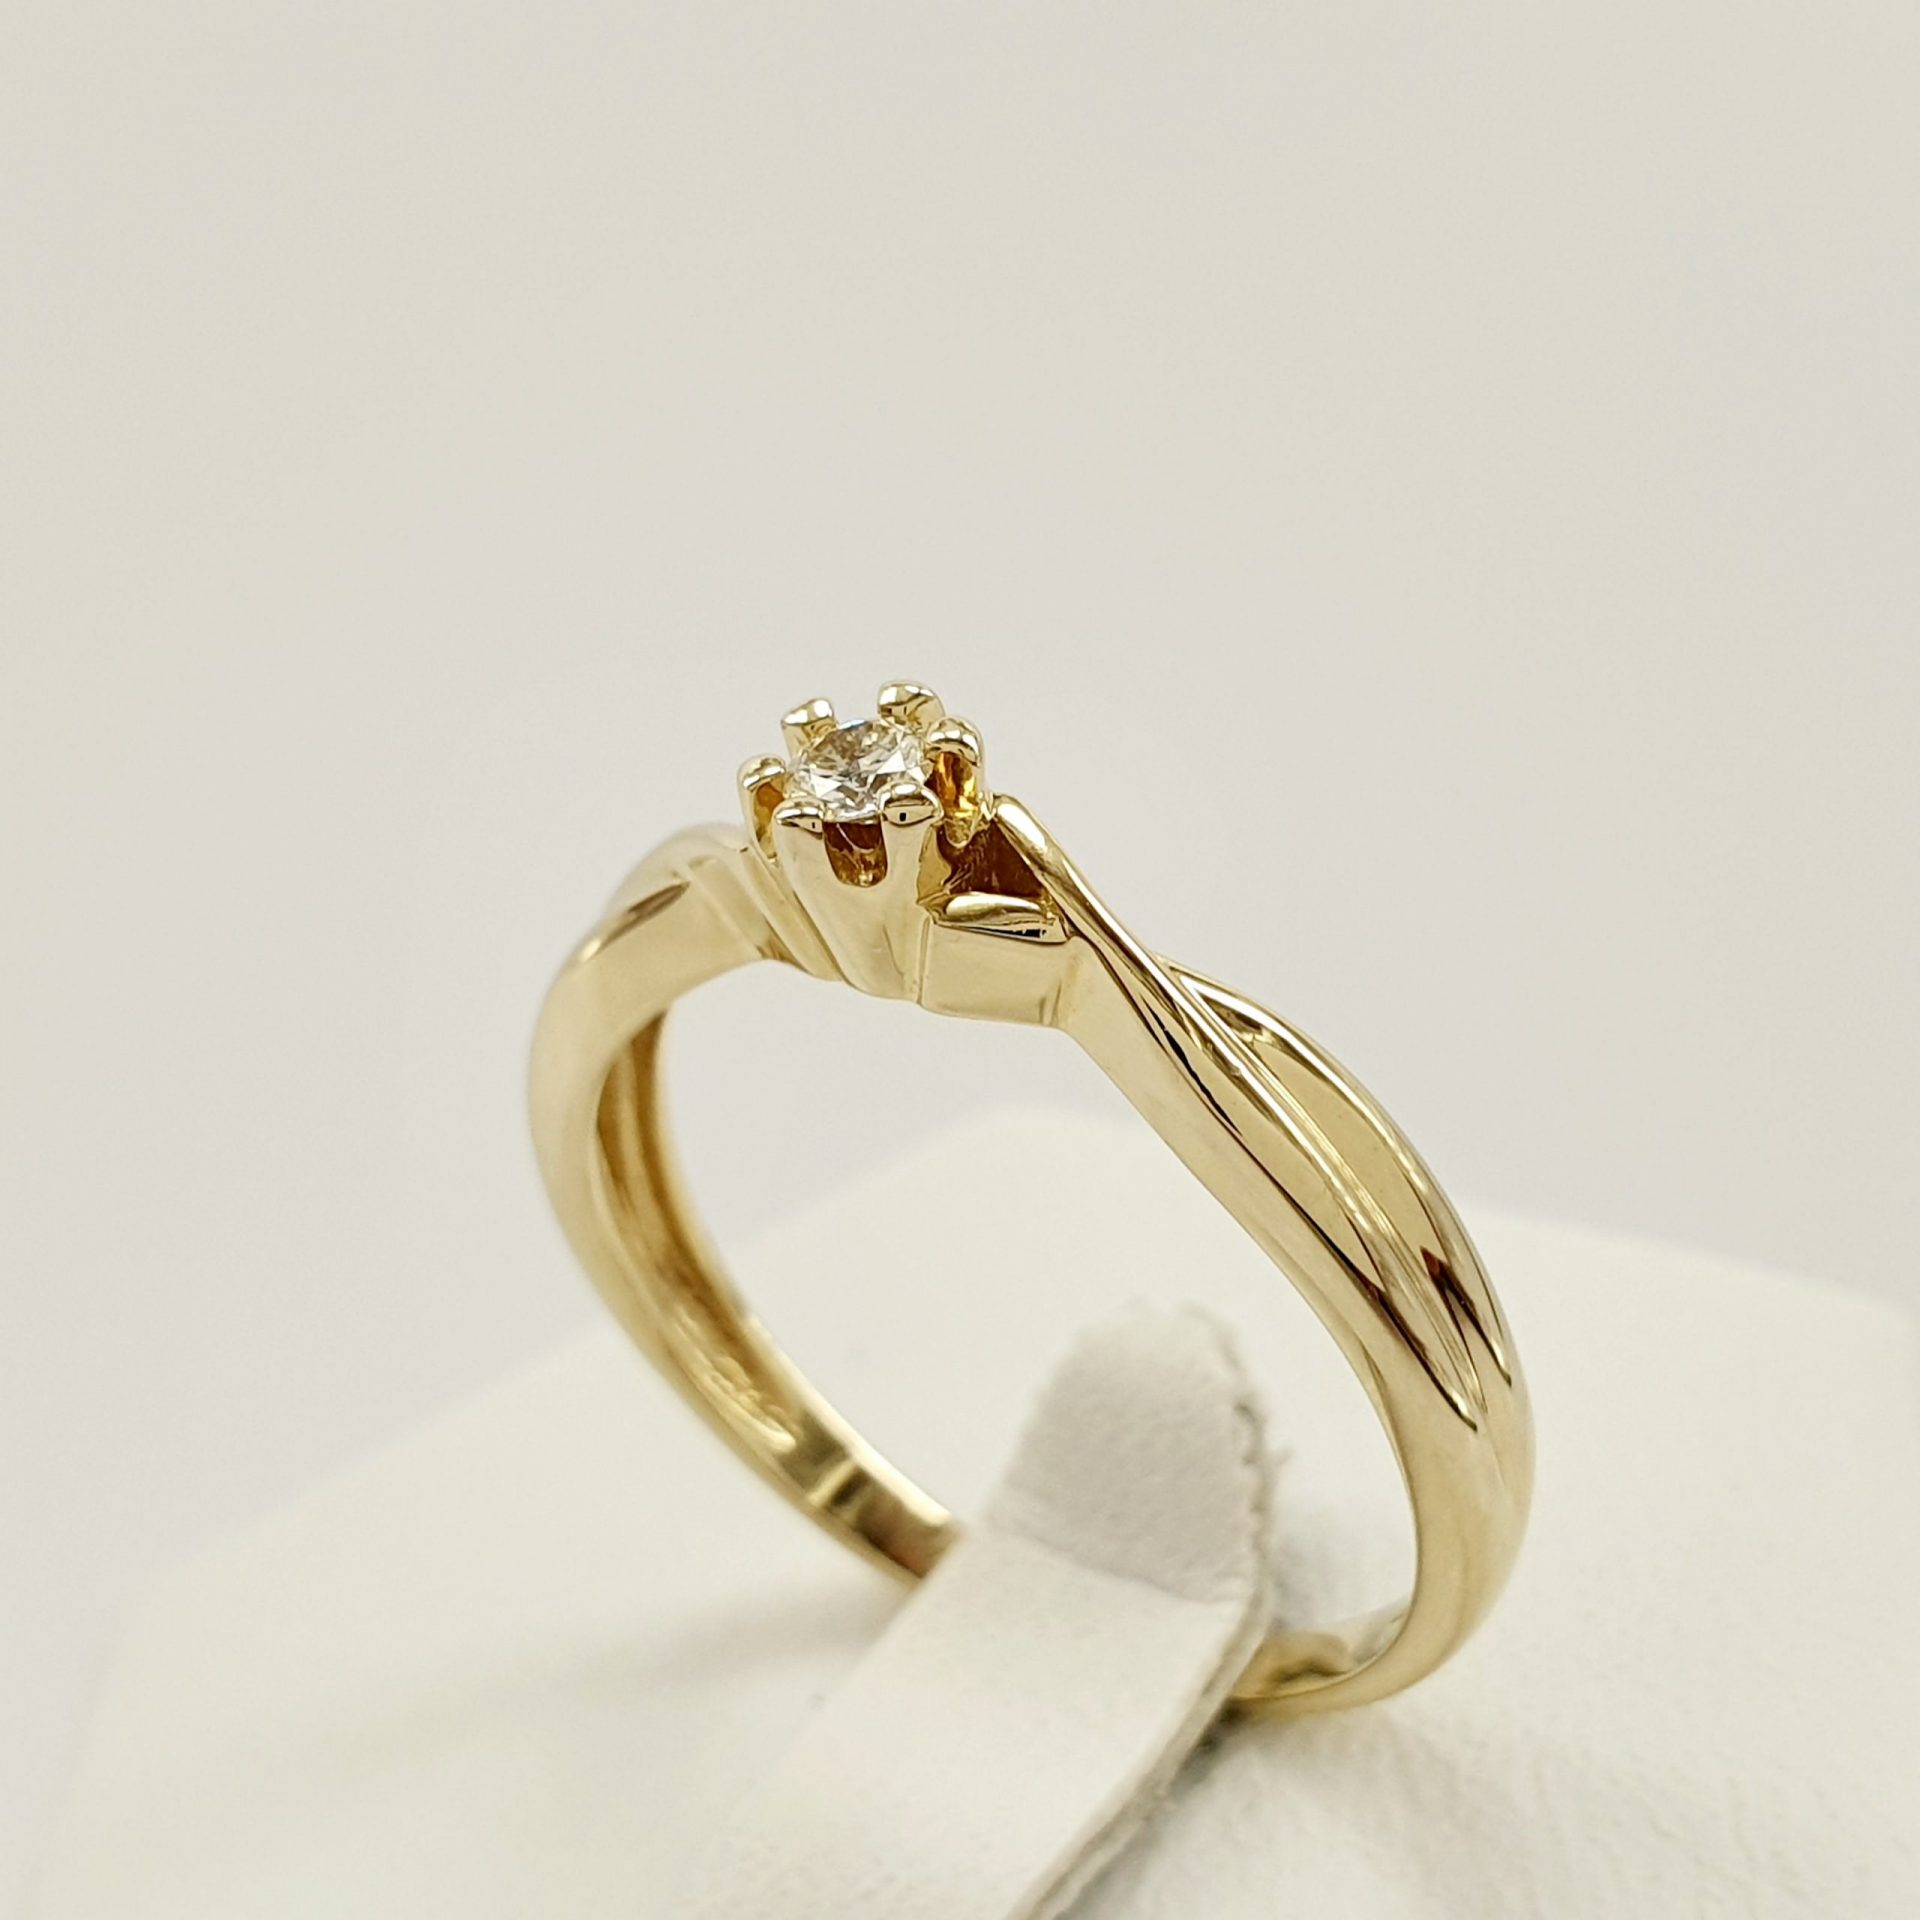 Delikatny pierścionek zaręczynowy z brylantem